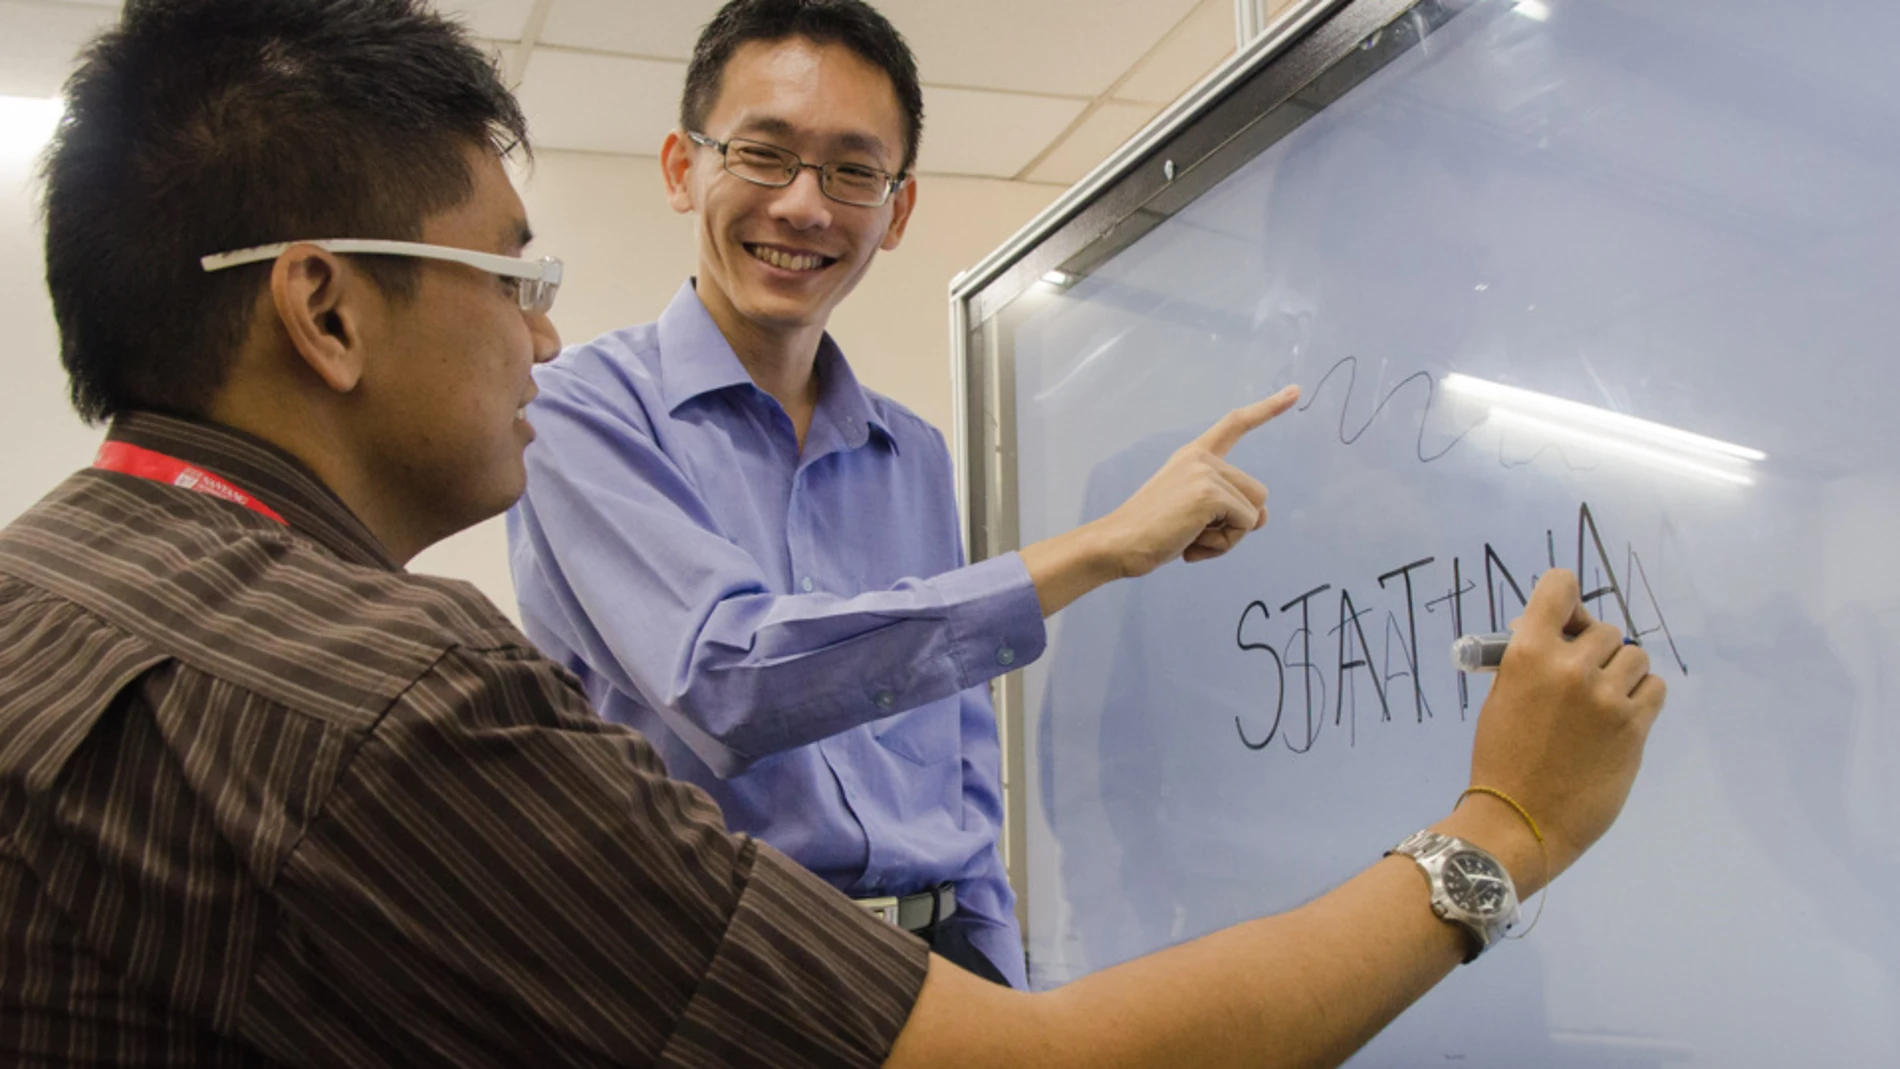 El profesor Andy Khong (derecha), con el estudiante Zaw Lin, probando el prototipo de Statina